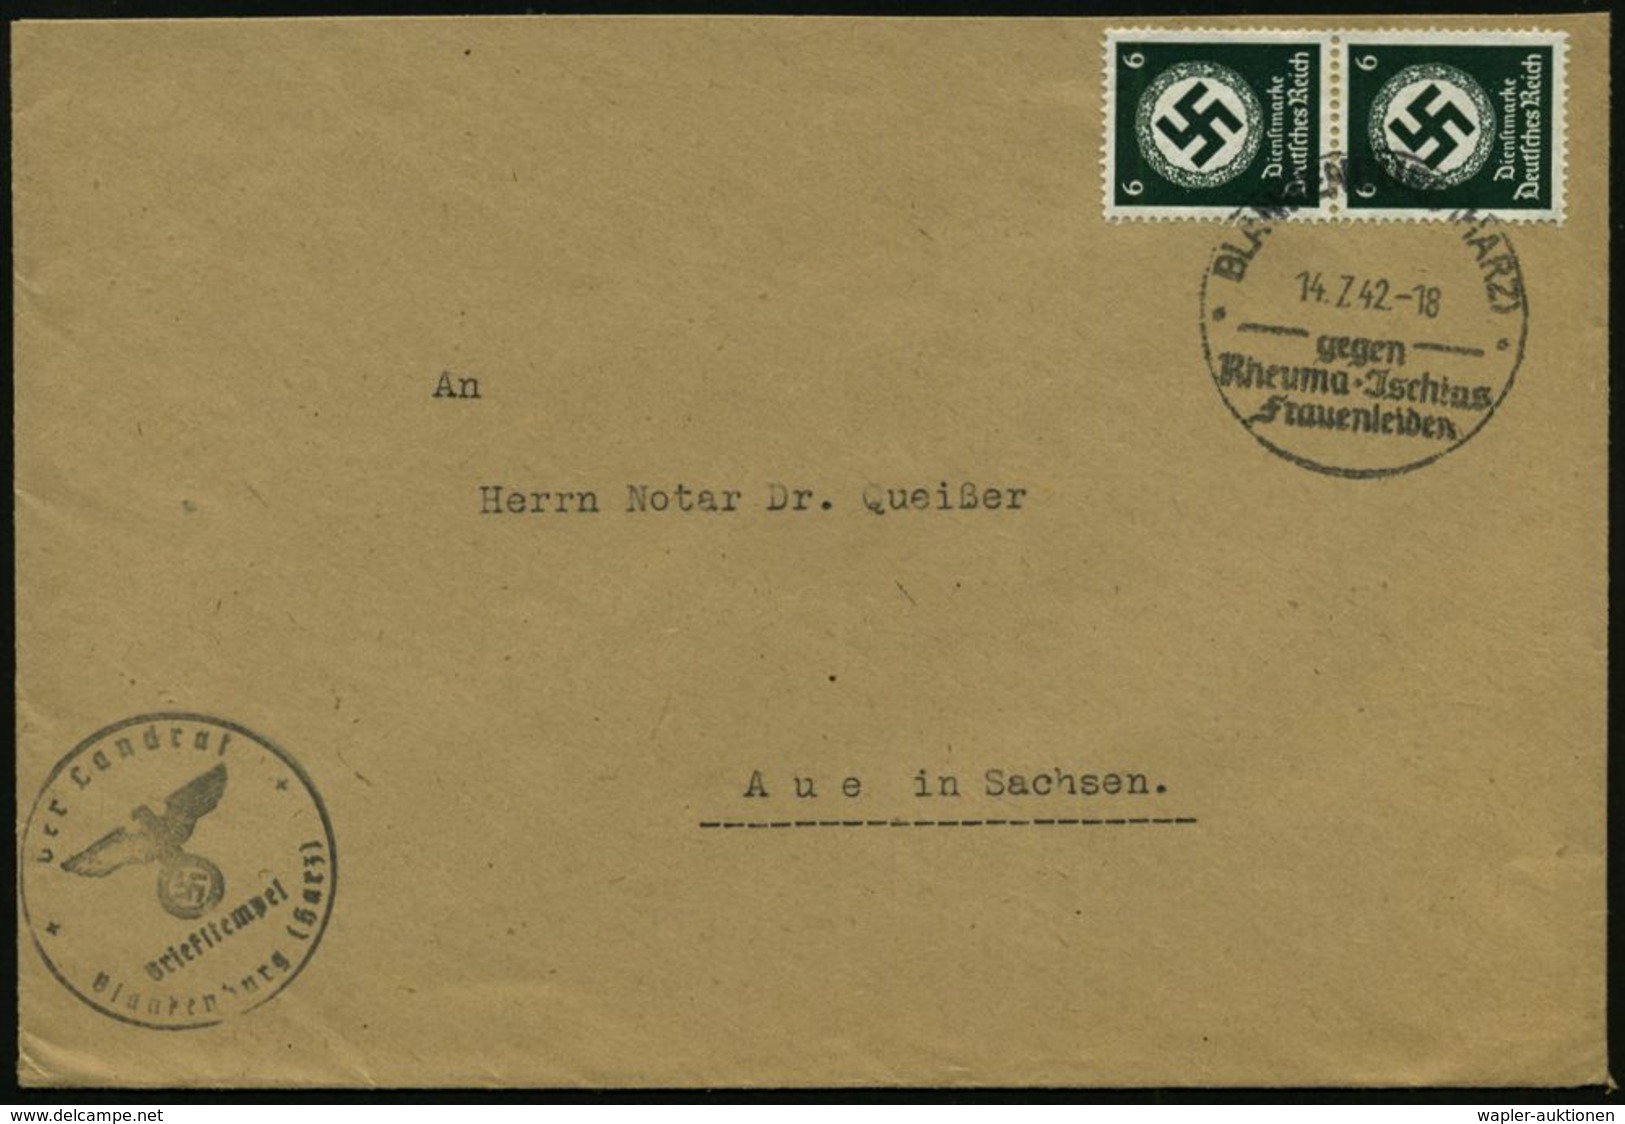 RHEUMATISMUS : BLANKENBURG (HARZ)/ Gegen/ Rheuma-Jschias/ Frauenleiden 1942 (14.7.) HWSt Auf Paar 6 Pf. Behördendienst + - Krankheiten